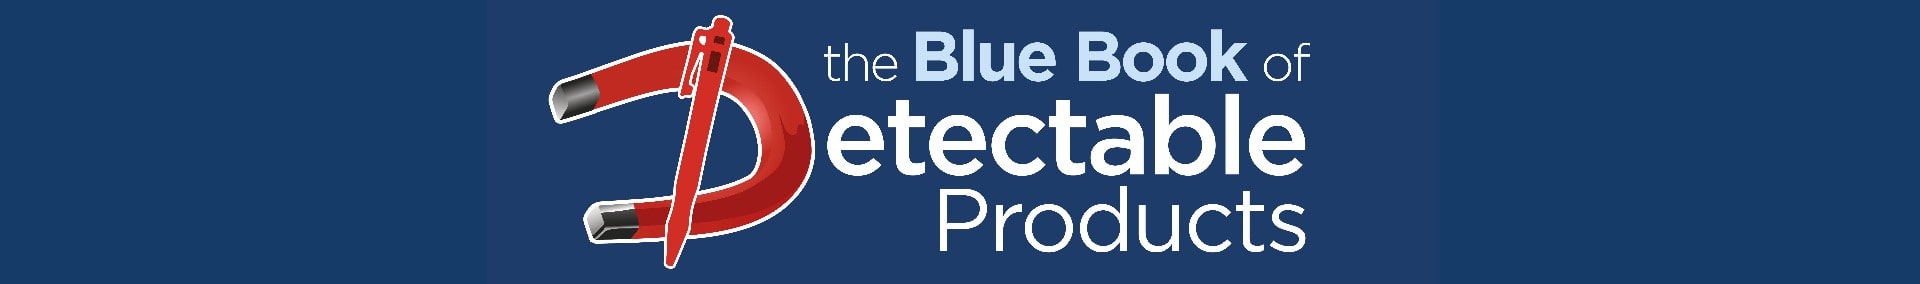 O Livro Azul dos Produtos Detectáveis - Catálogo de Produtos Detectamet